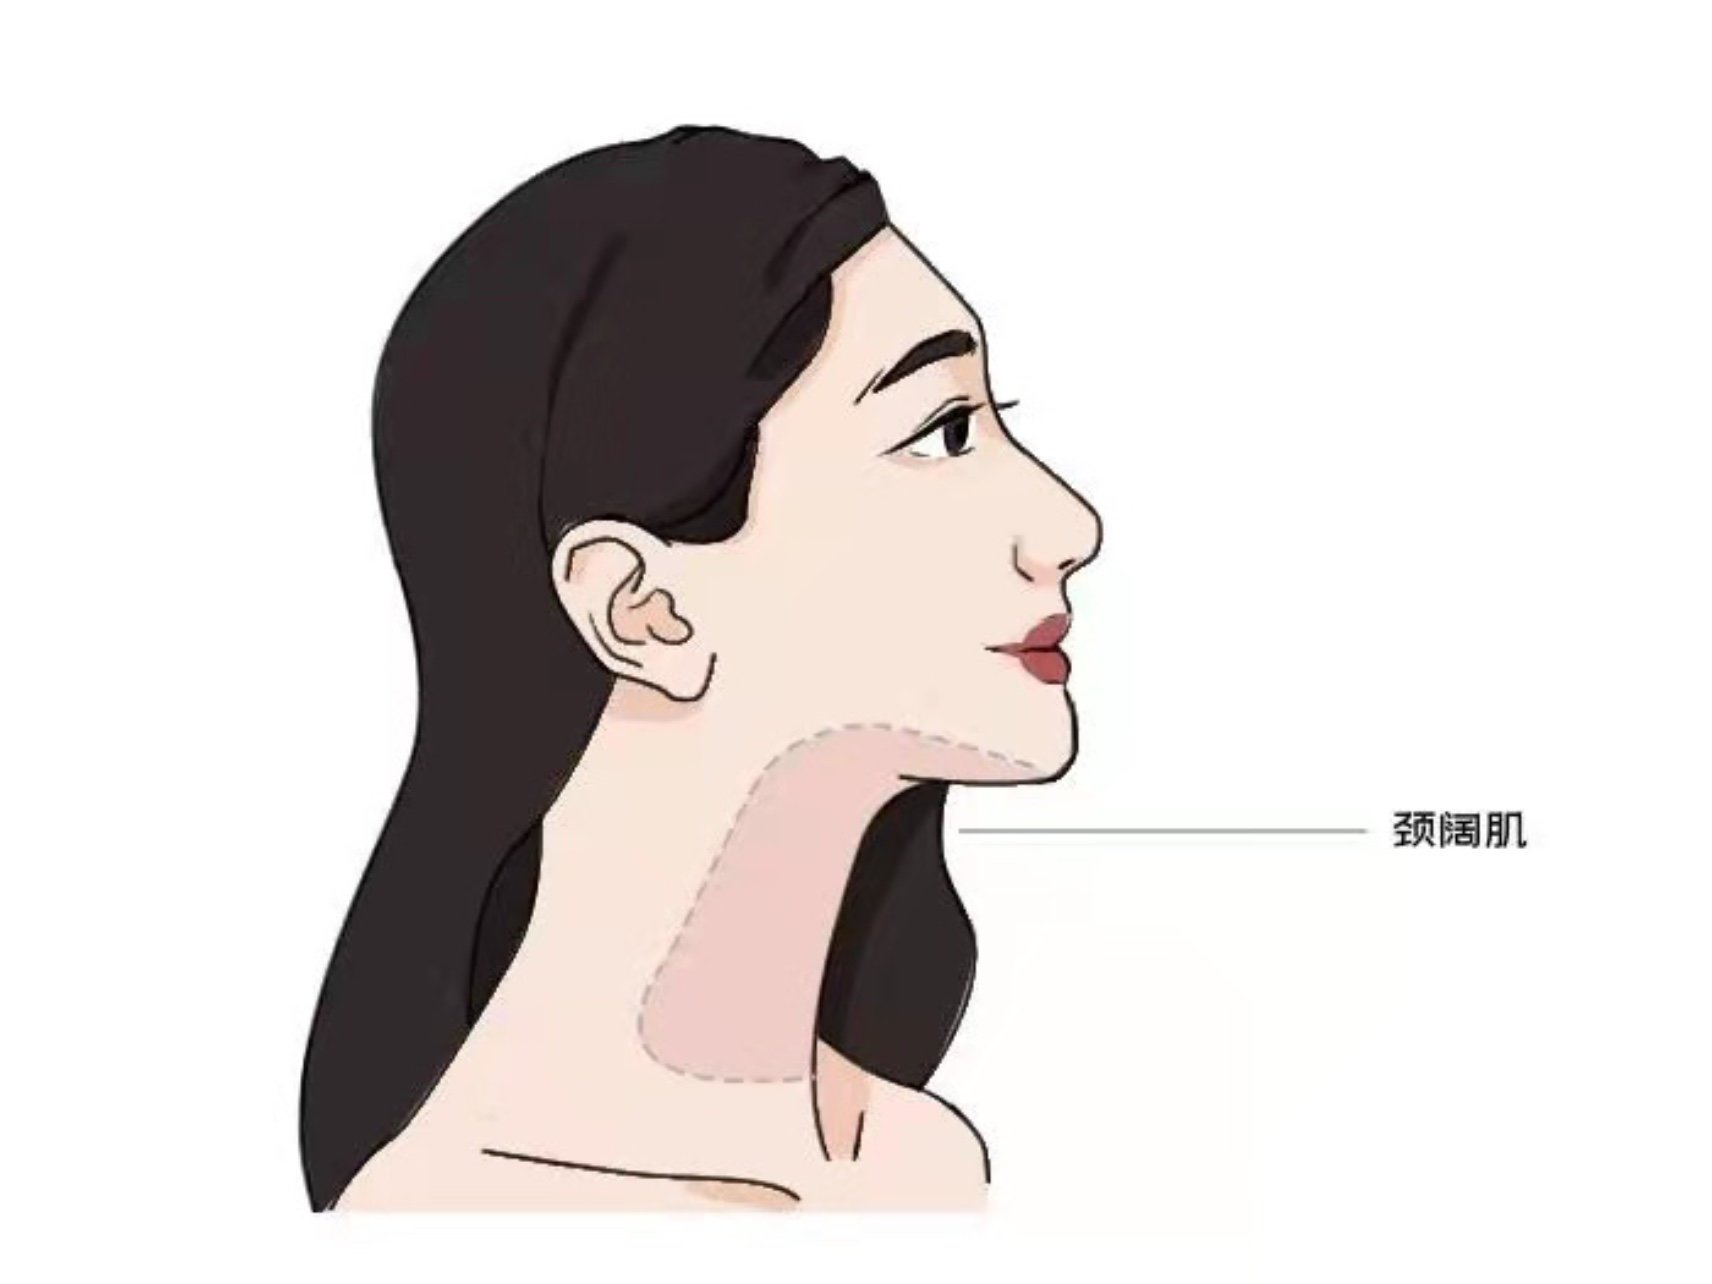 下颌线与脖子交汇的地方的肌肉,叫颈阔肌.